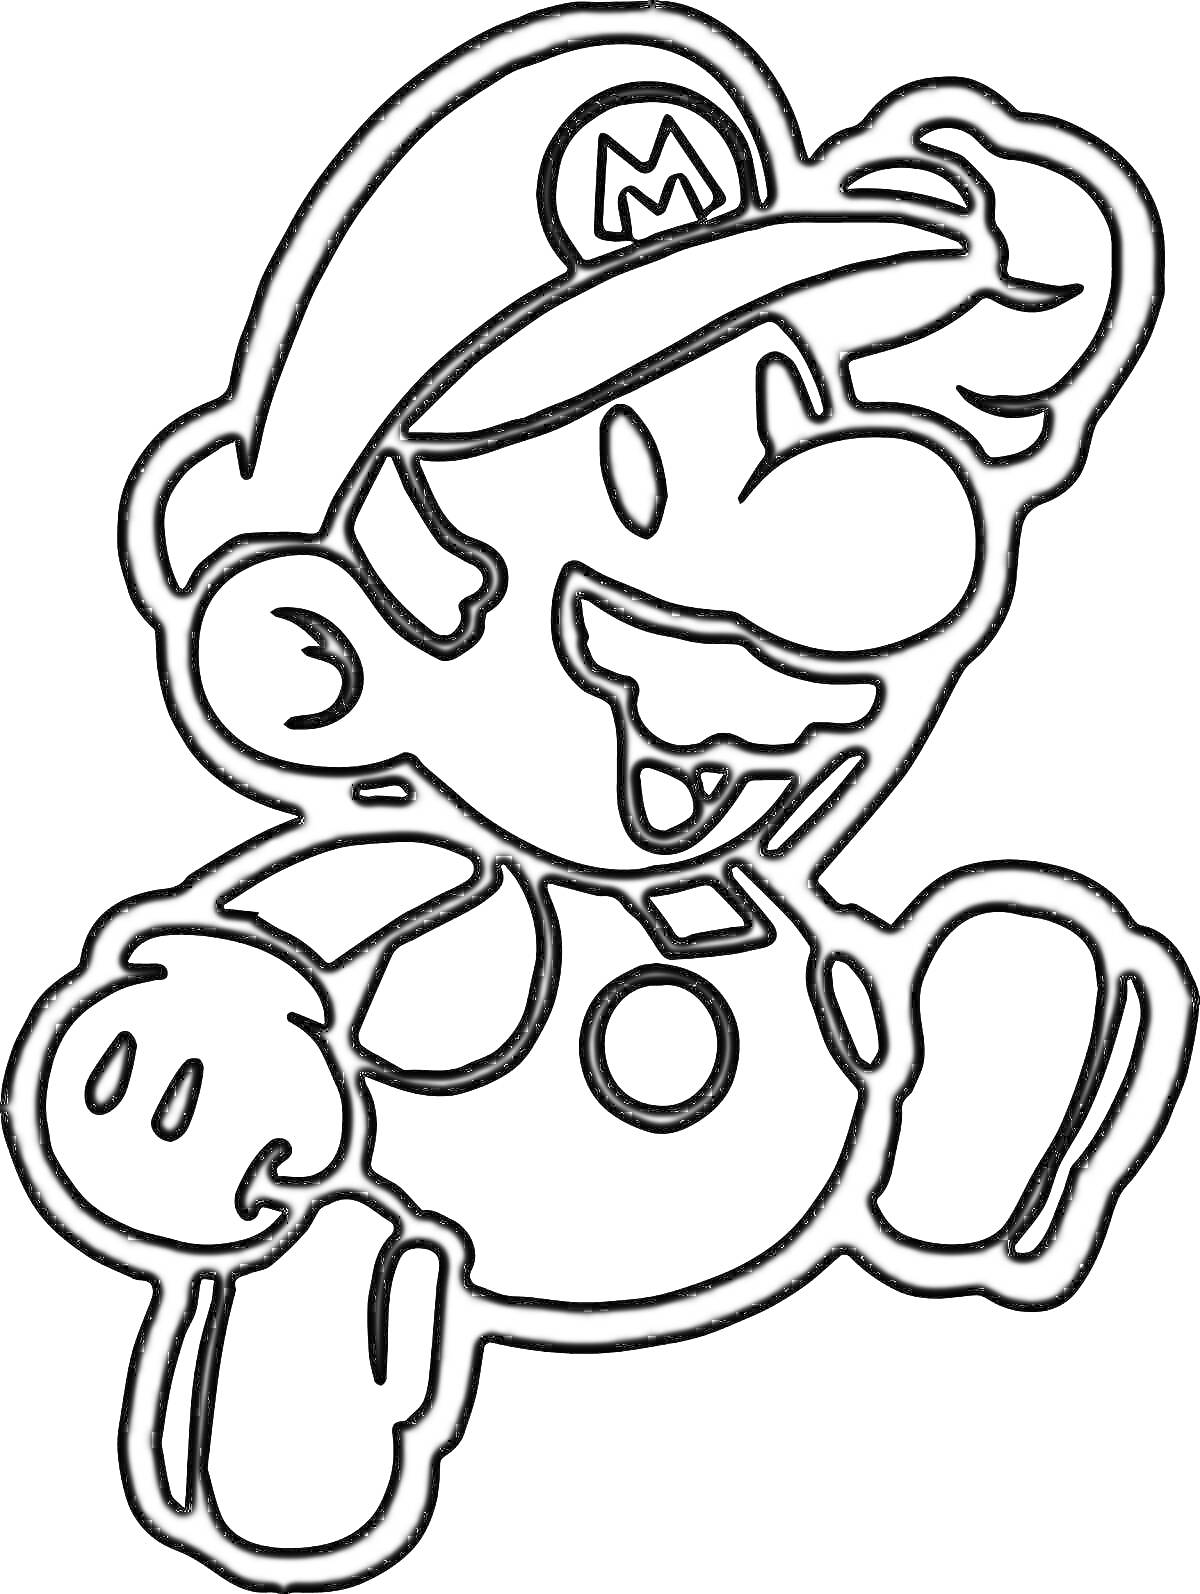 Раскраска Супер Марио в кепке с буквой M, улыбающийся и поднимающий правую руку